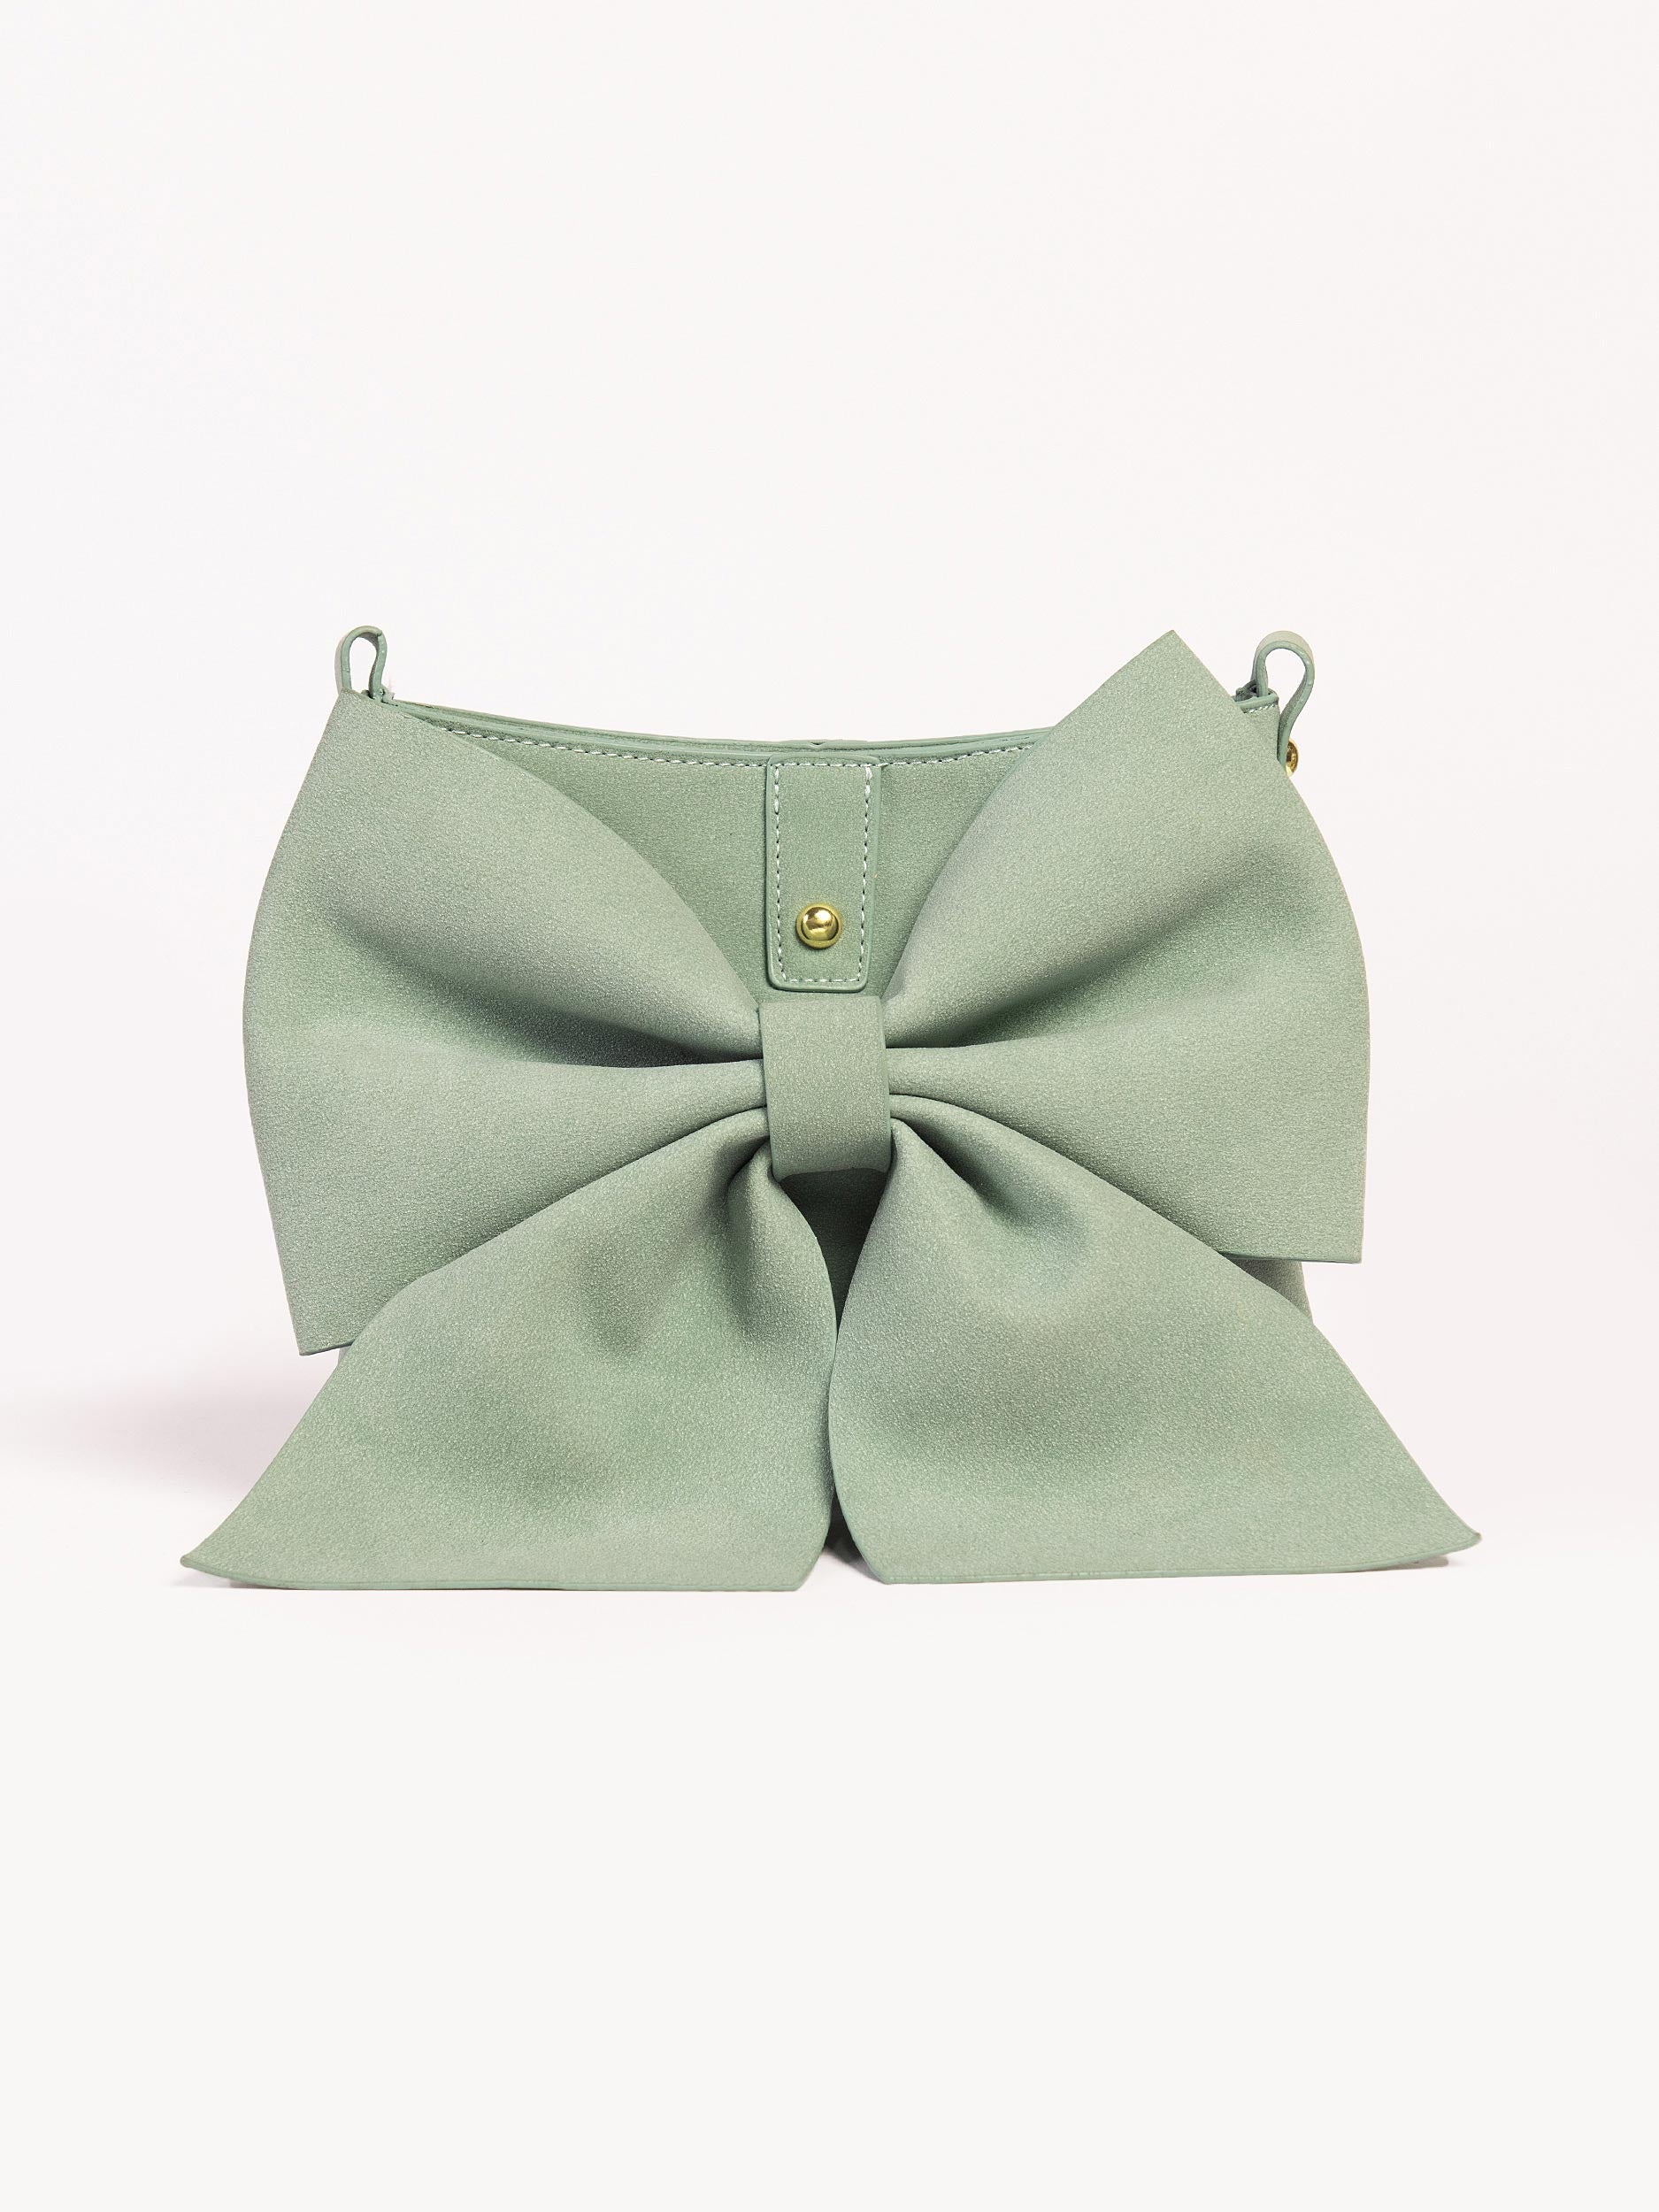 Bow Tie Clutch Bag